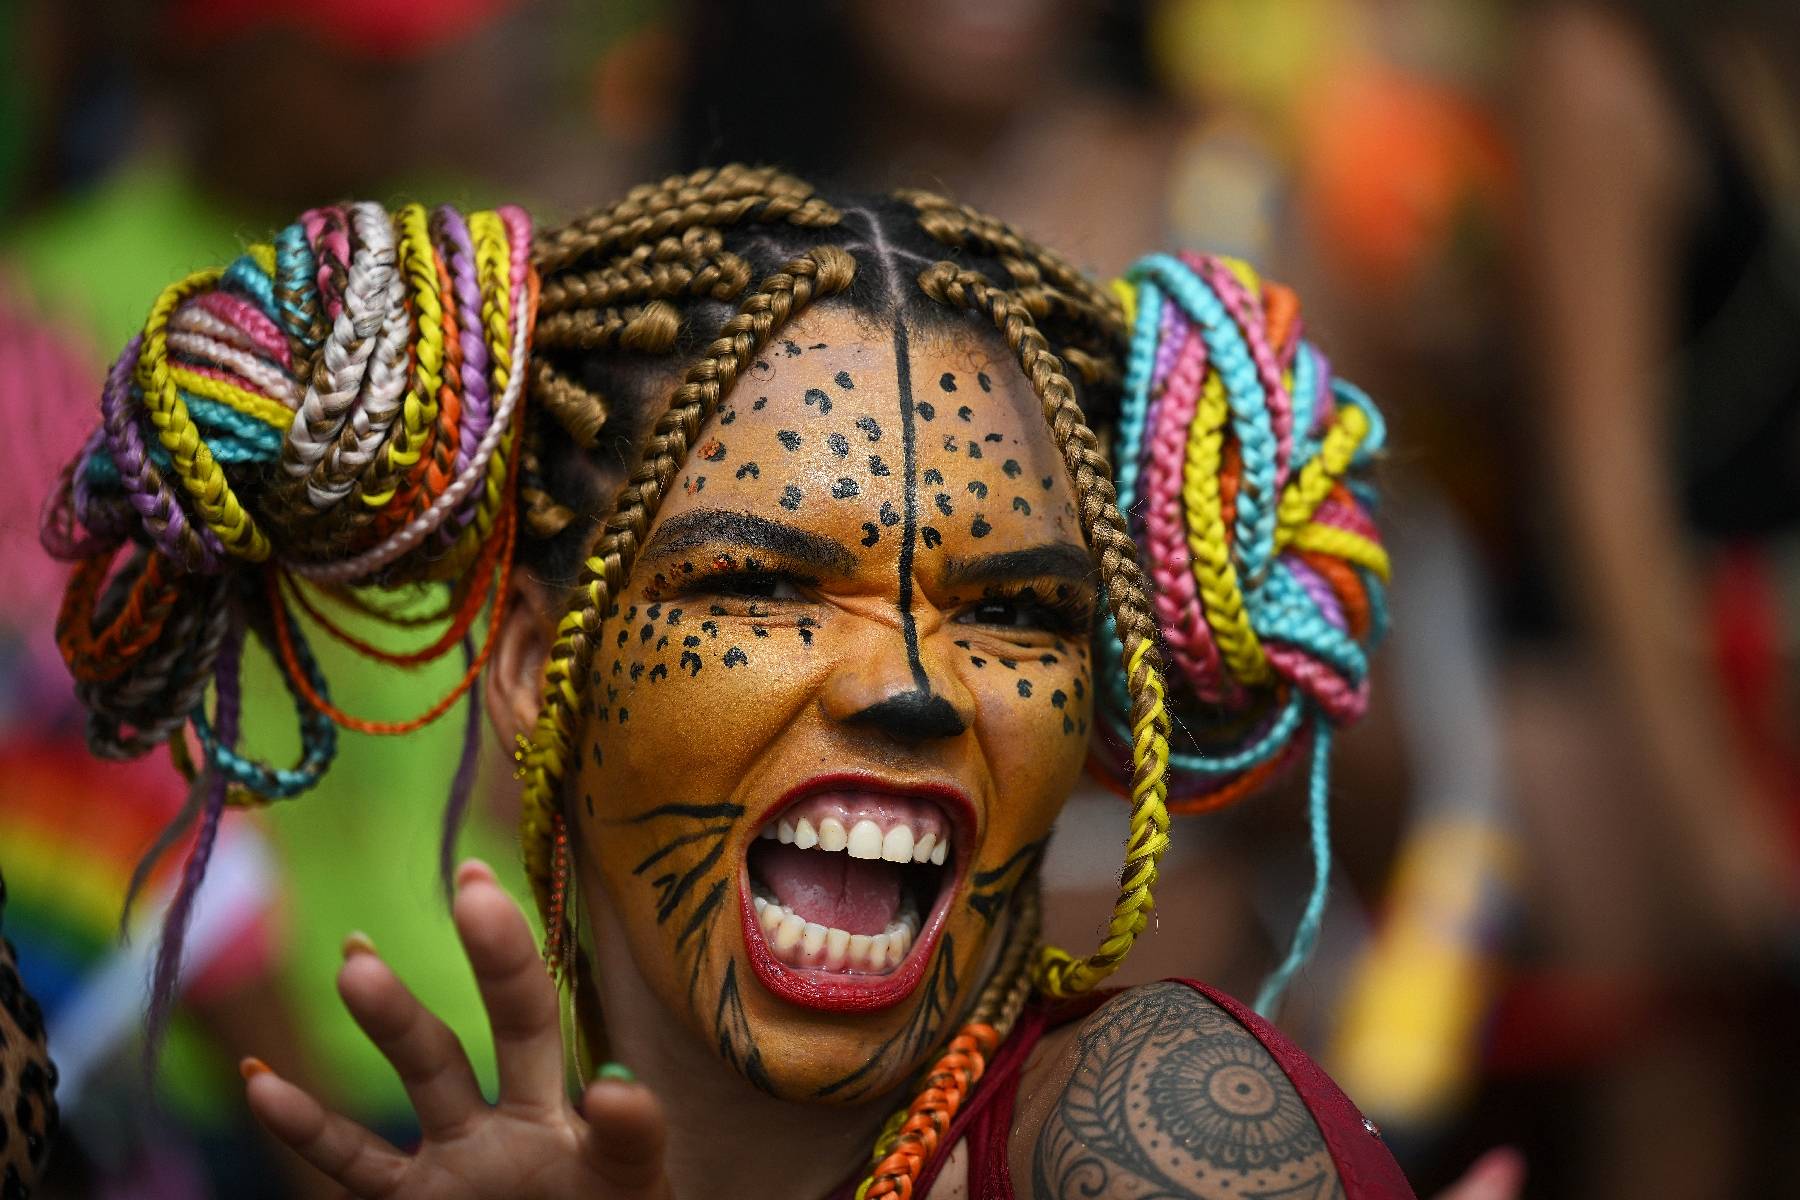 Brésil: le carnaval de Rio dans toute sa splendeur au sambodrome